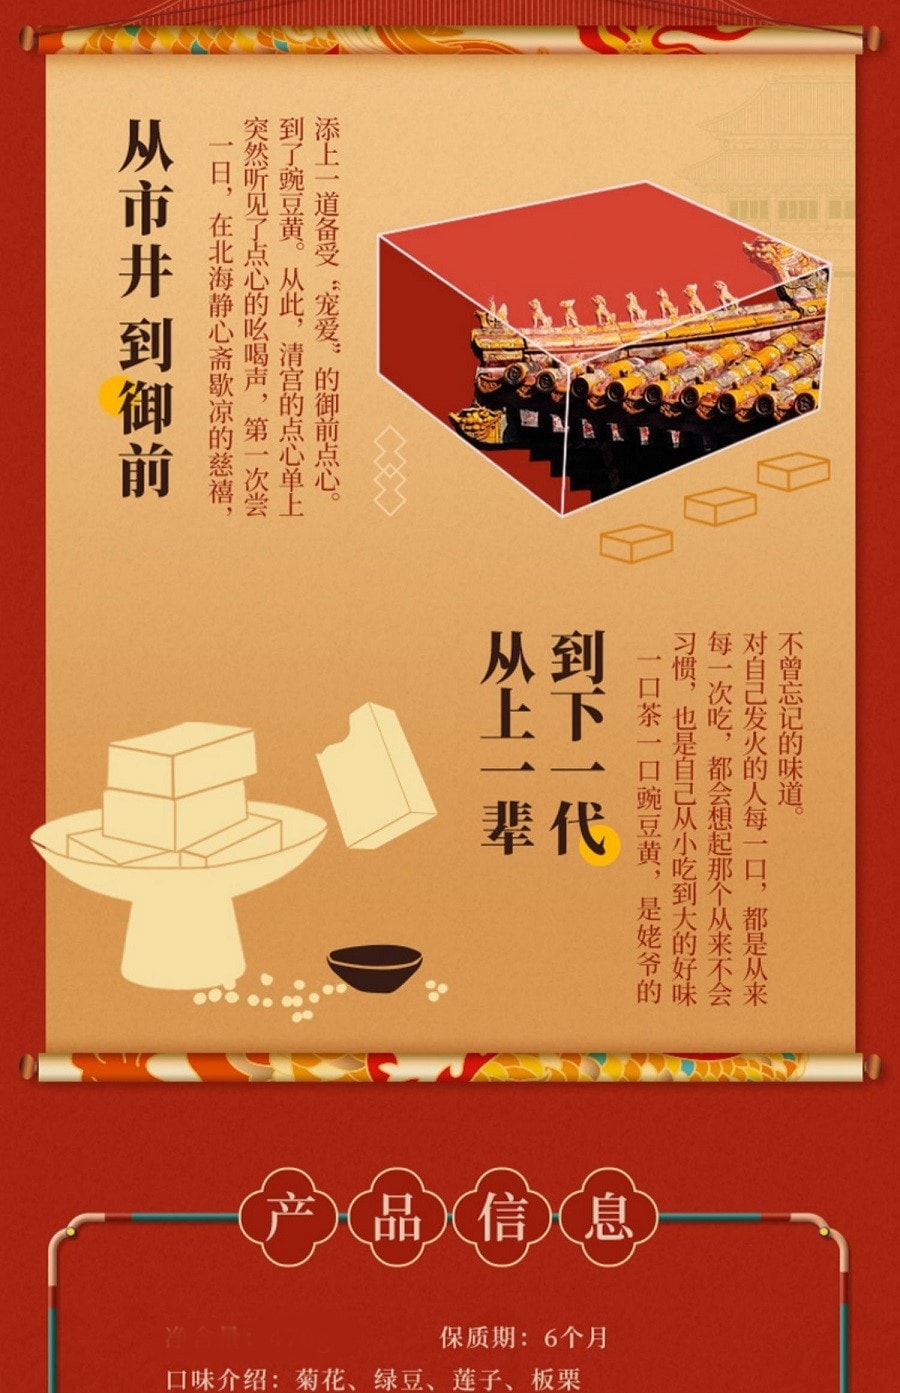 禦食園 傳統老北京風味 豌豆黃 新鮮短保 170克 (菊花蓮子綠豆栗子 隨機3種口味混合裝) 青團